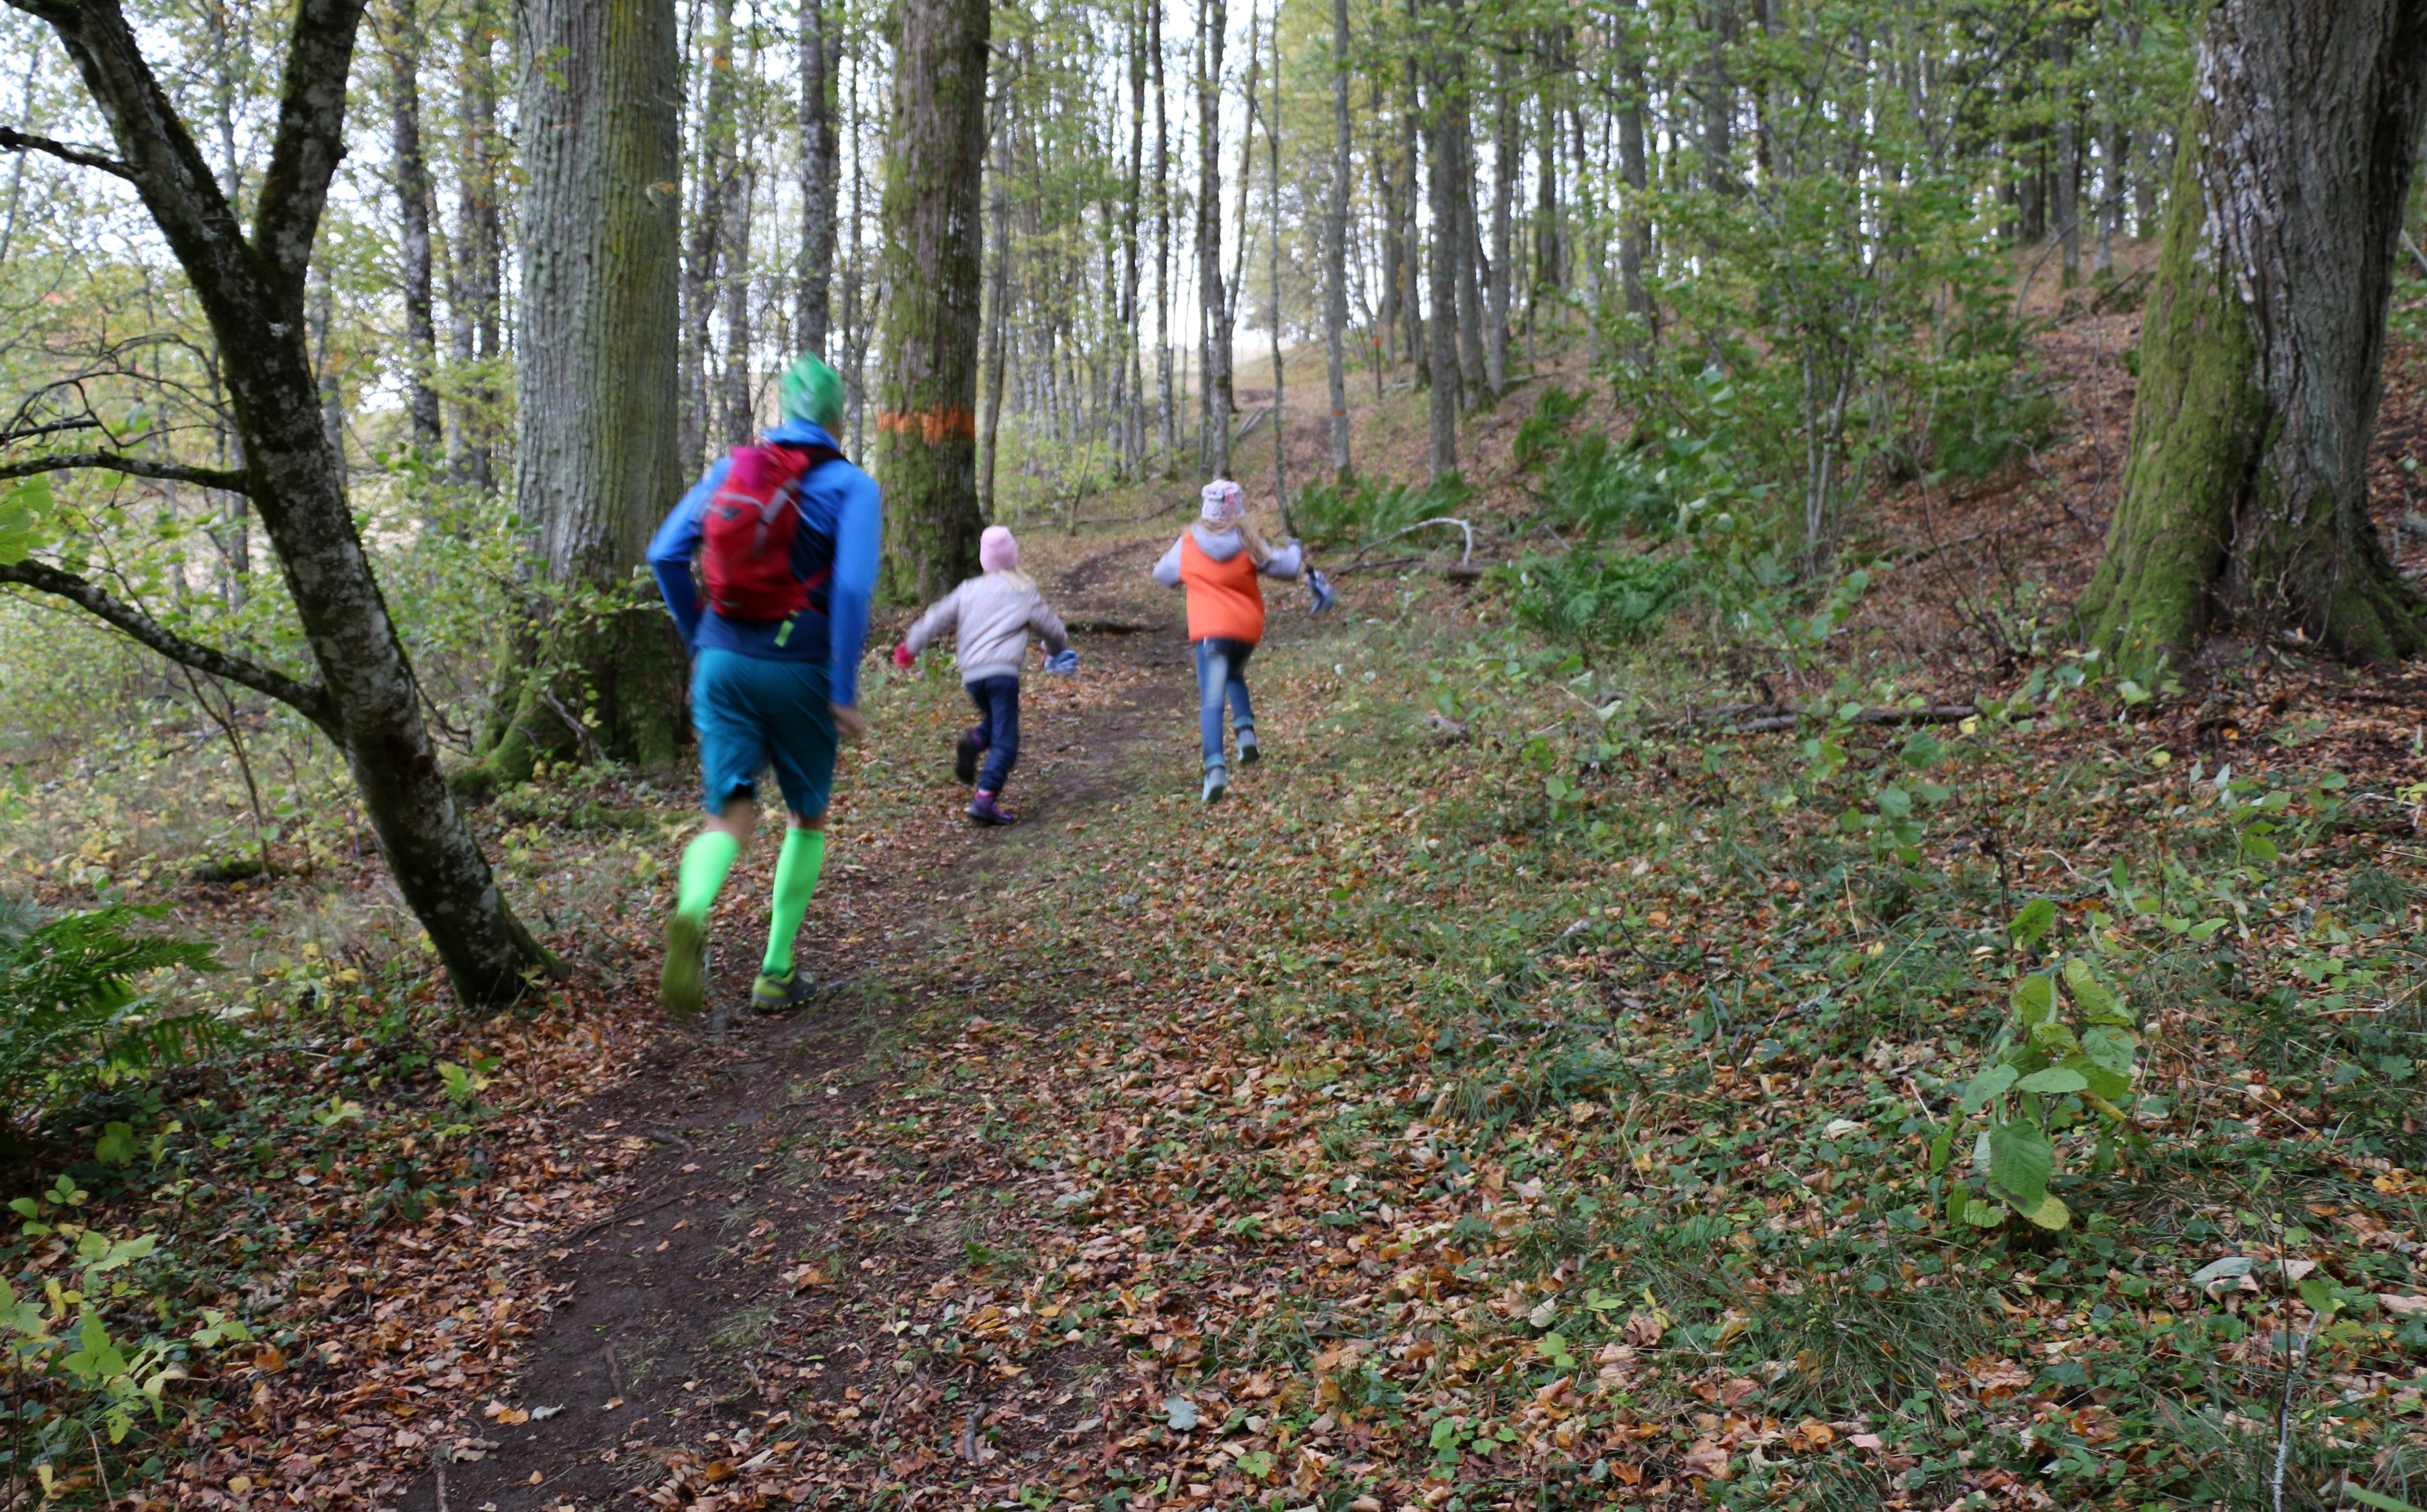 En vuxen person och två barn springer uppför en stig. Intill stigen finns ett orangemarkerat träd.